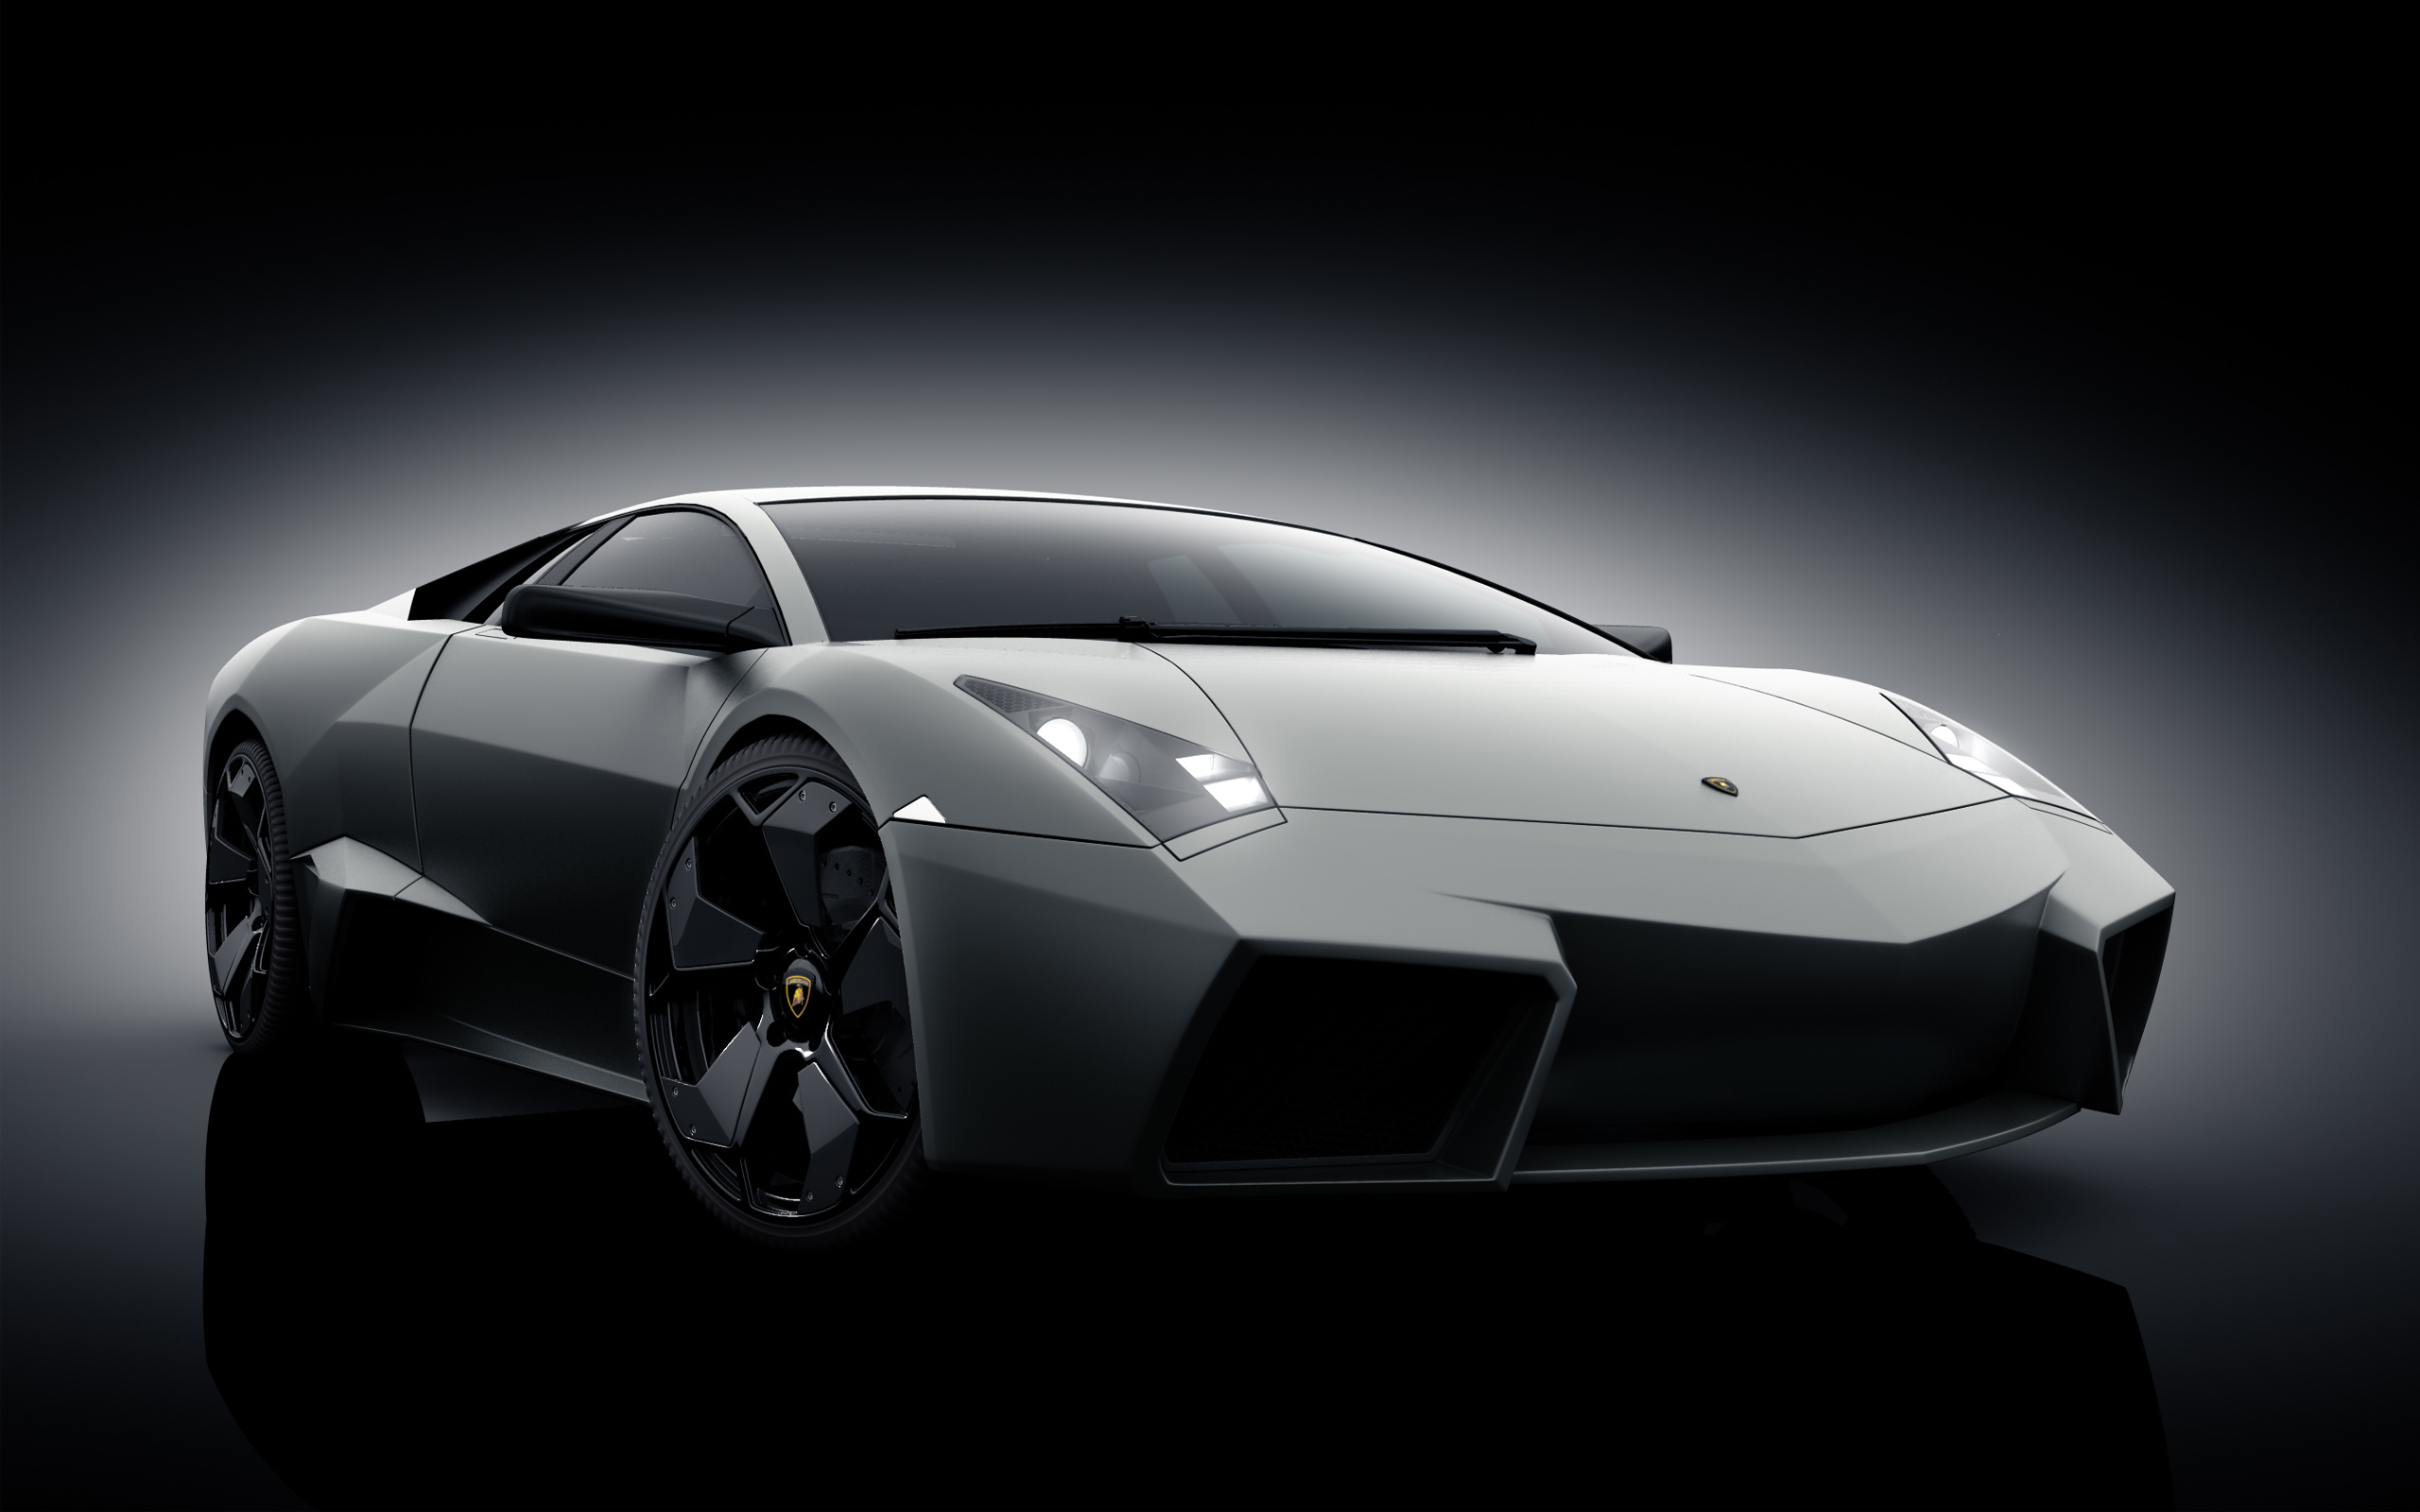 Bạn là một fan hâm mộ của những chiếc siêu xe đầy sức mạnh và tốc độ? Hãy chiêm ngưỡng ngay bức ảnh về siêu xe Lamborghini Reventon đẹp ngất ngây này. Với thiết kế cực kỳ phong cách và đẳng cấp, Lamborghini Reventon sẽ khiến bạn cảm thấy thật tự hào khi được sở hữu nó.